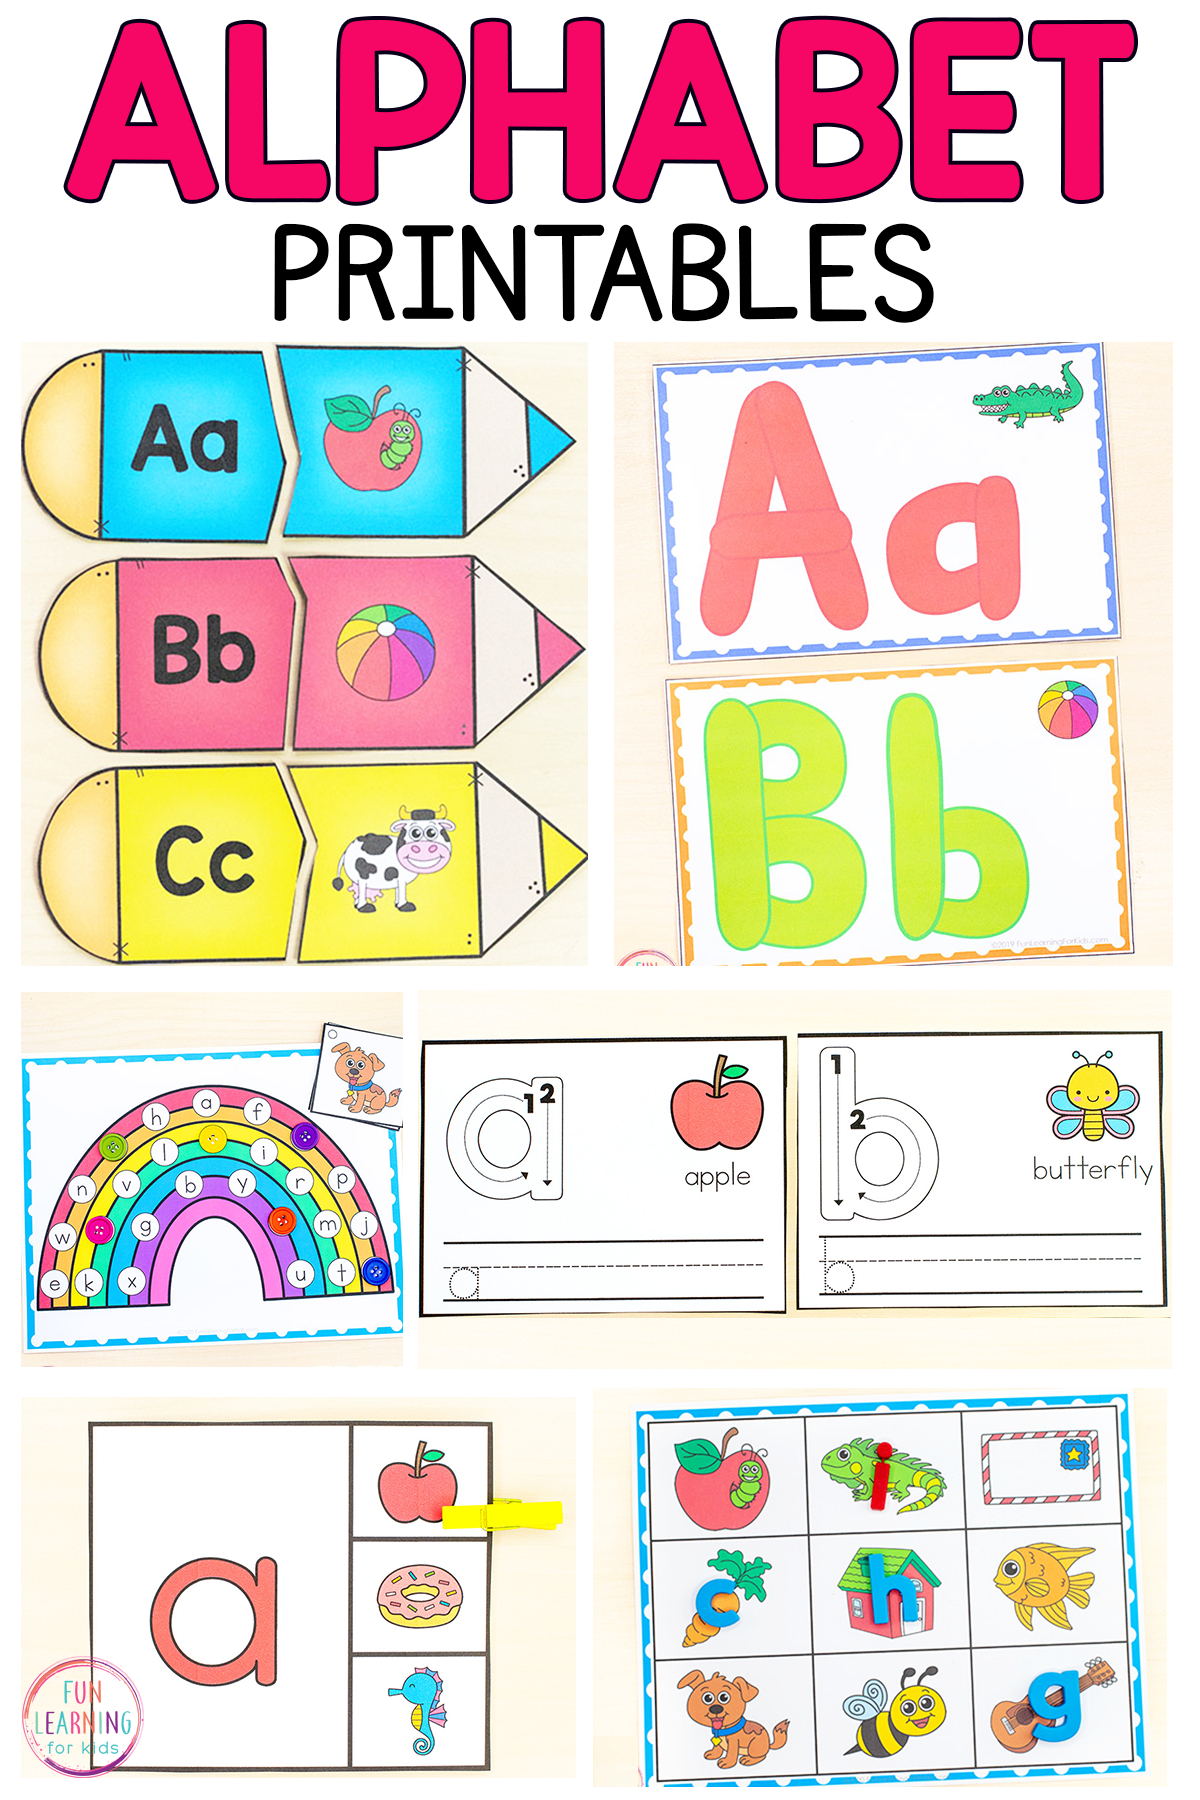 Free Alphabet Printables with regard to Free Abc Printables For Kindergarten